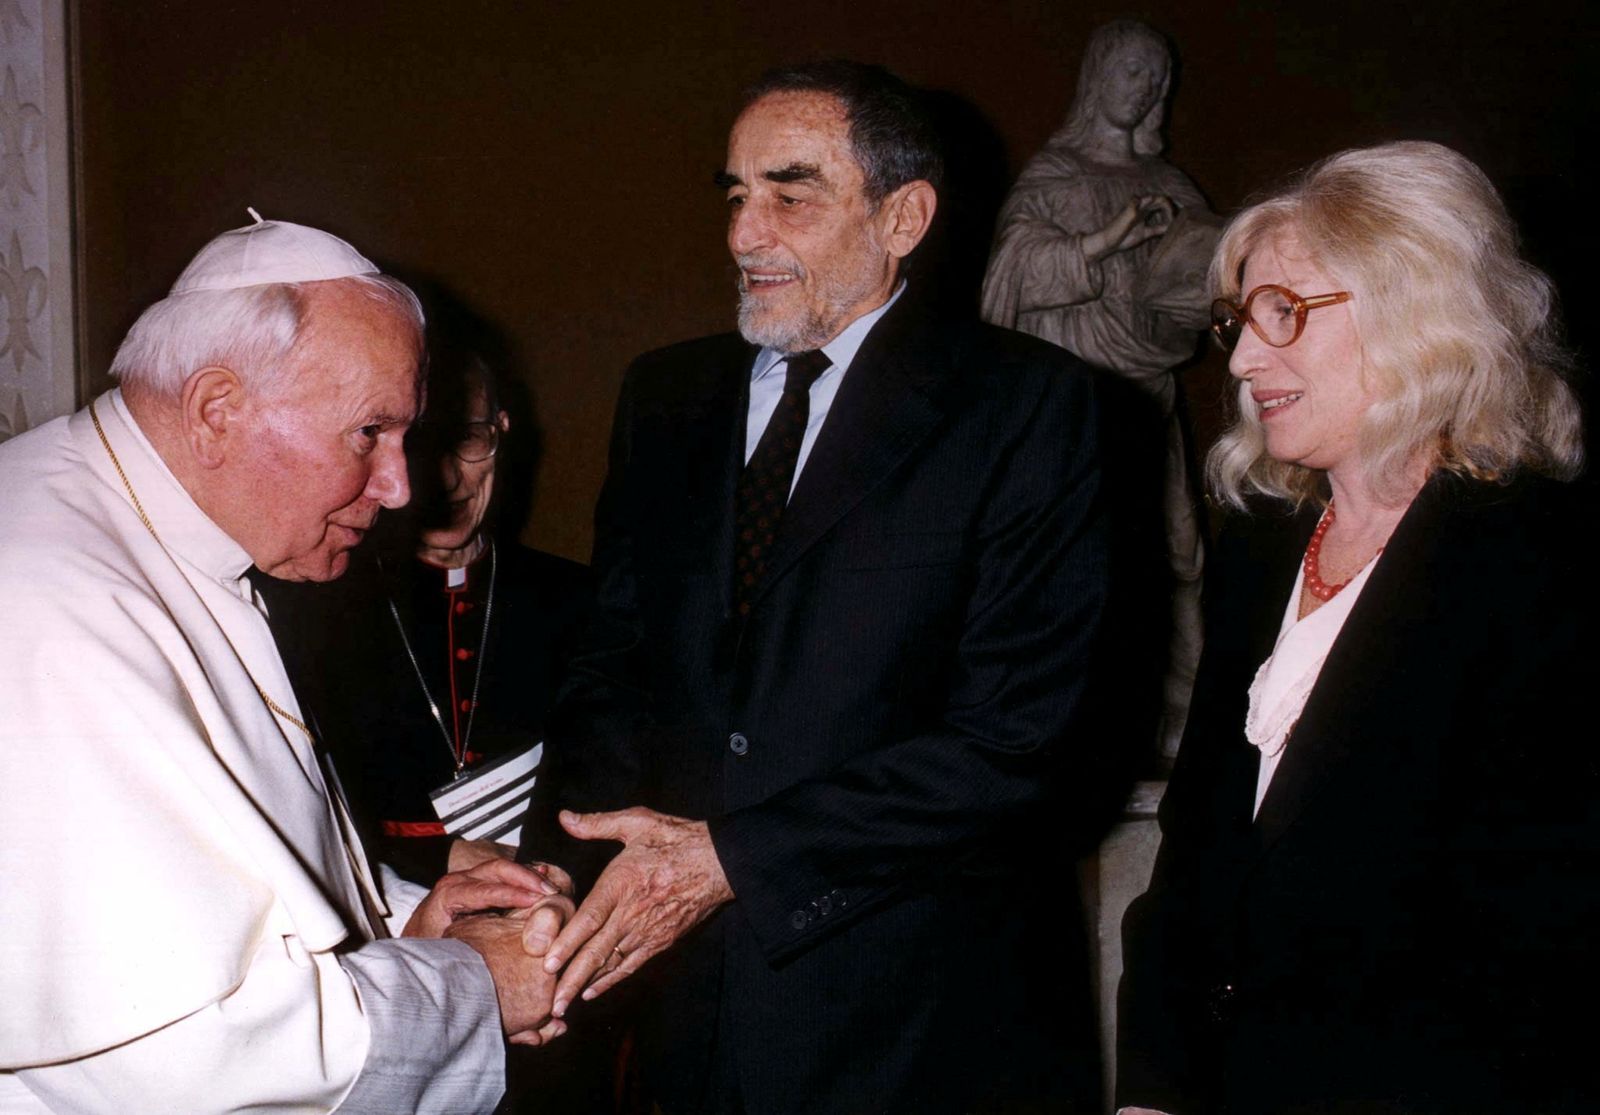 البابا يوحنا بولس الثاني يحيي الممثل الإيطالي فيتوريو جاسمان (وسط) والممثلة مونيكا فيتي عند وصولهما لحضور اجتماع خاص في الفاتيكان - 6 نوفمبر 1997 - Reuters photographer